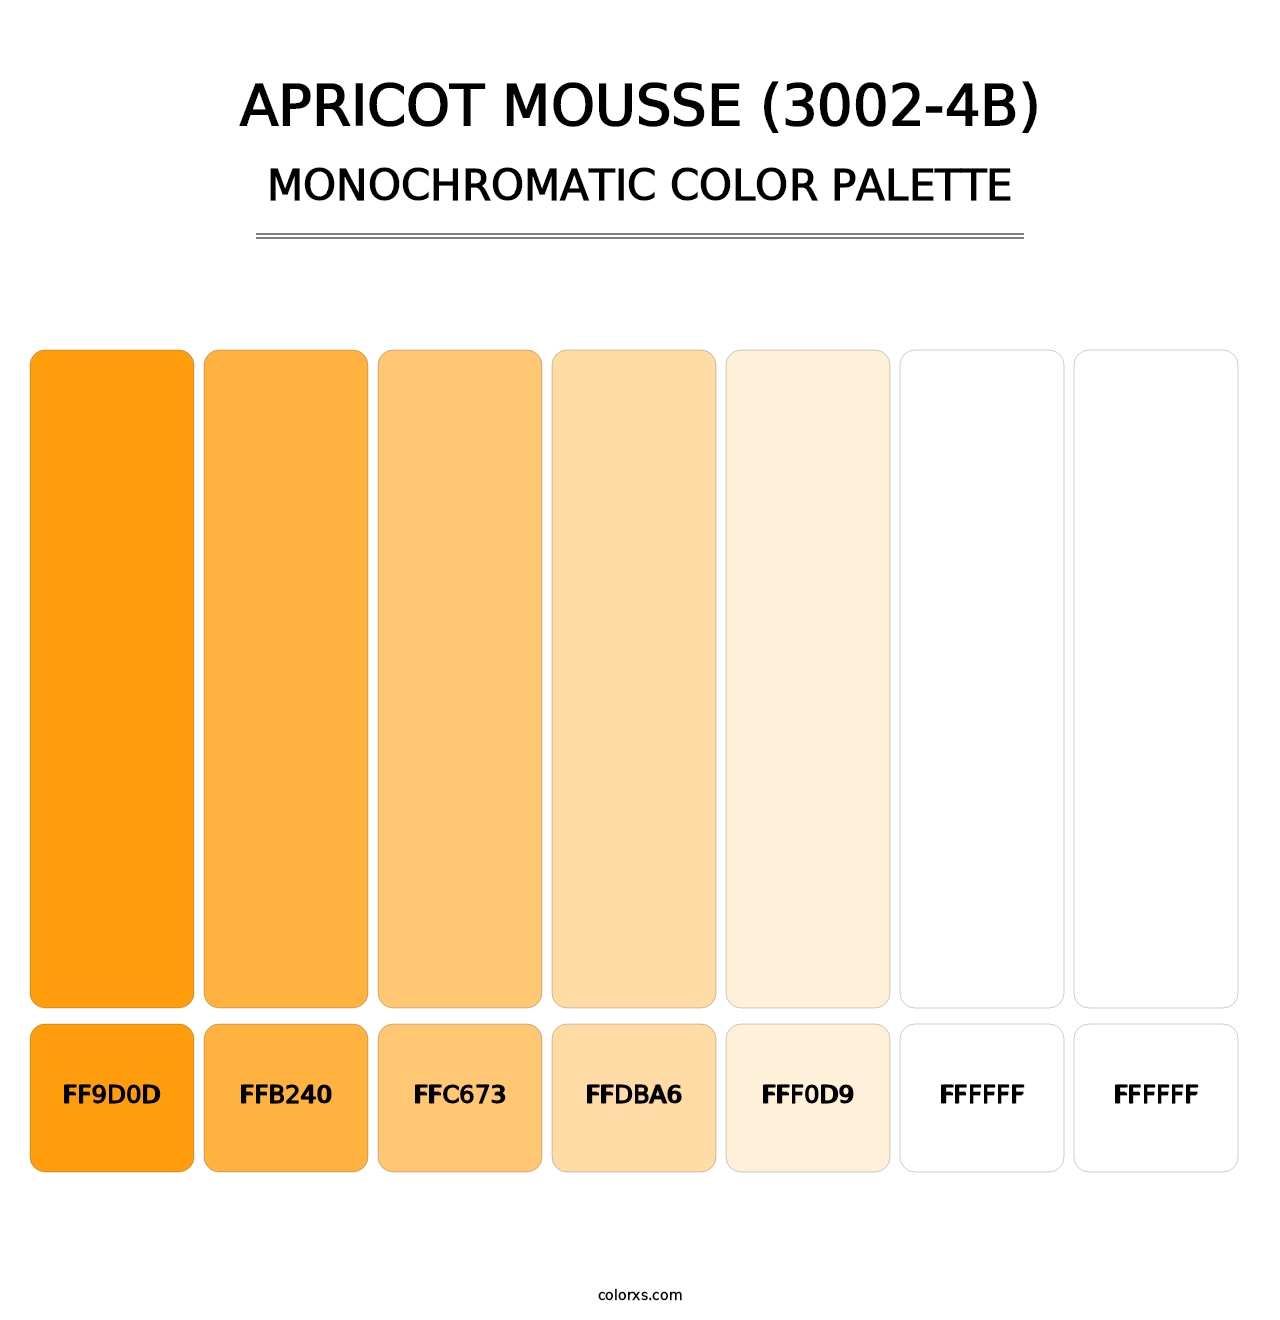 Apricot Mousse (3002-4B) - Monochromatic Color Palette